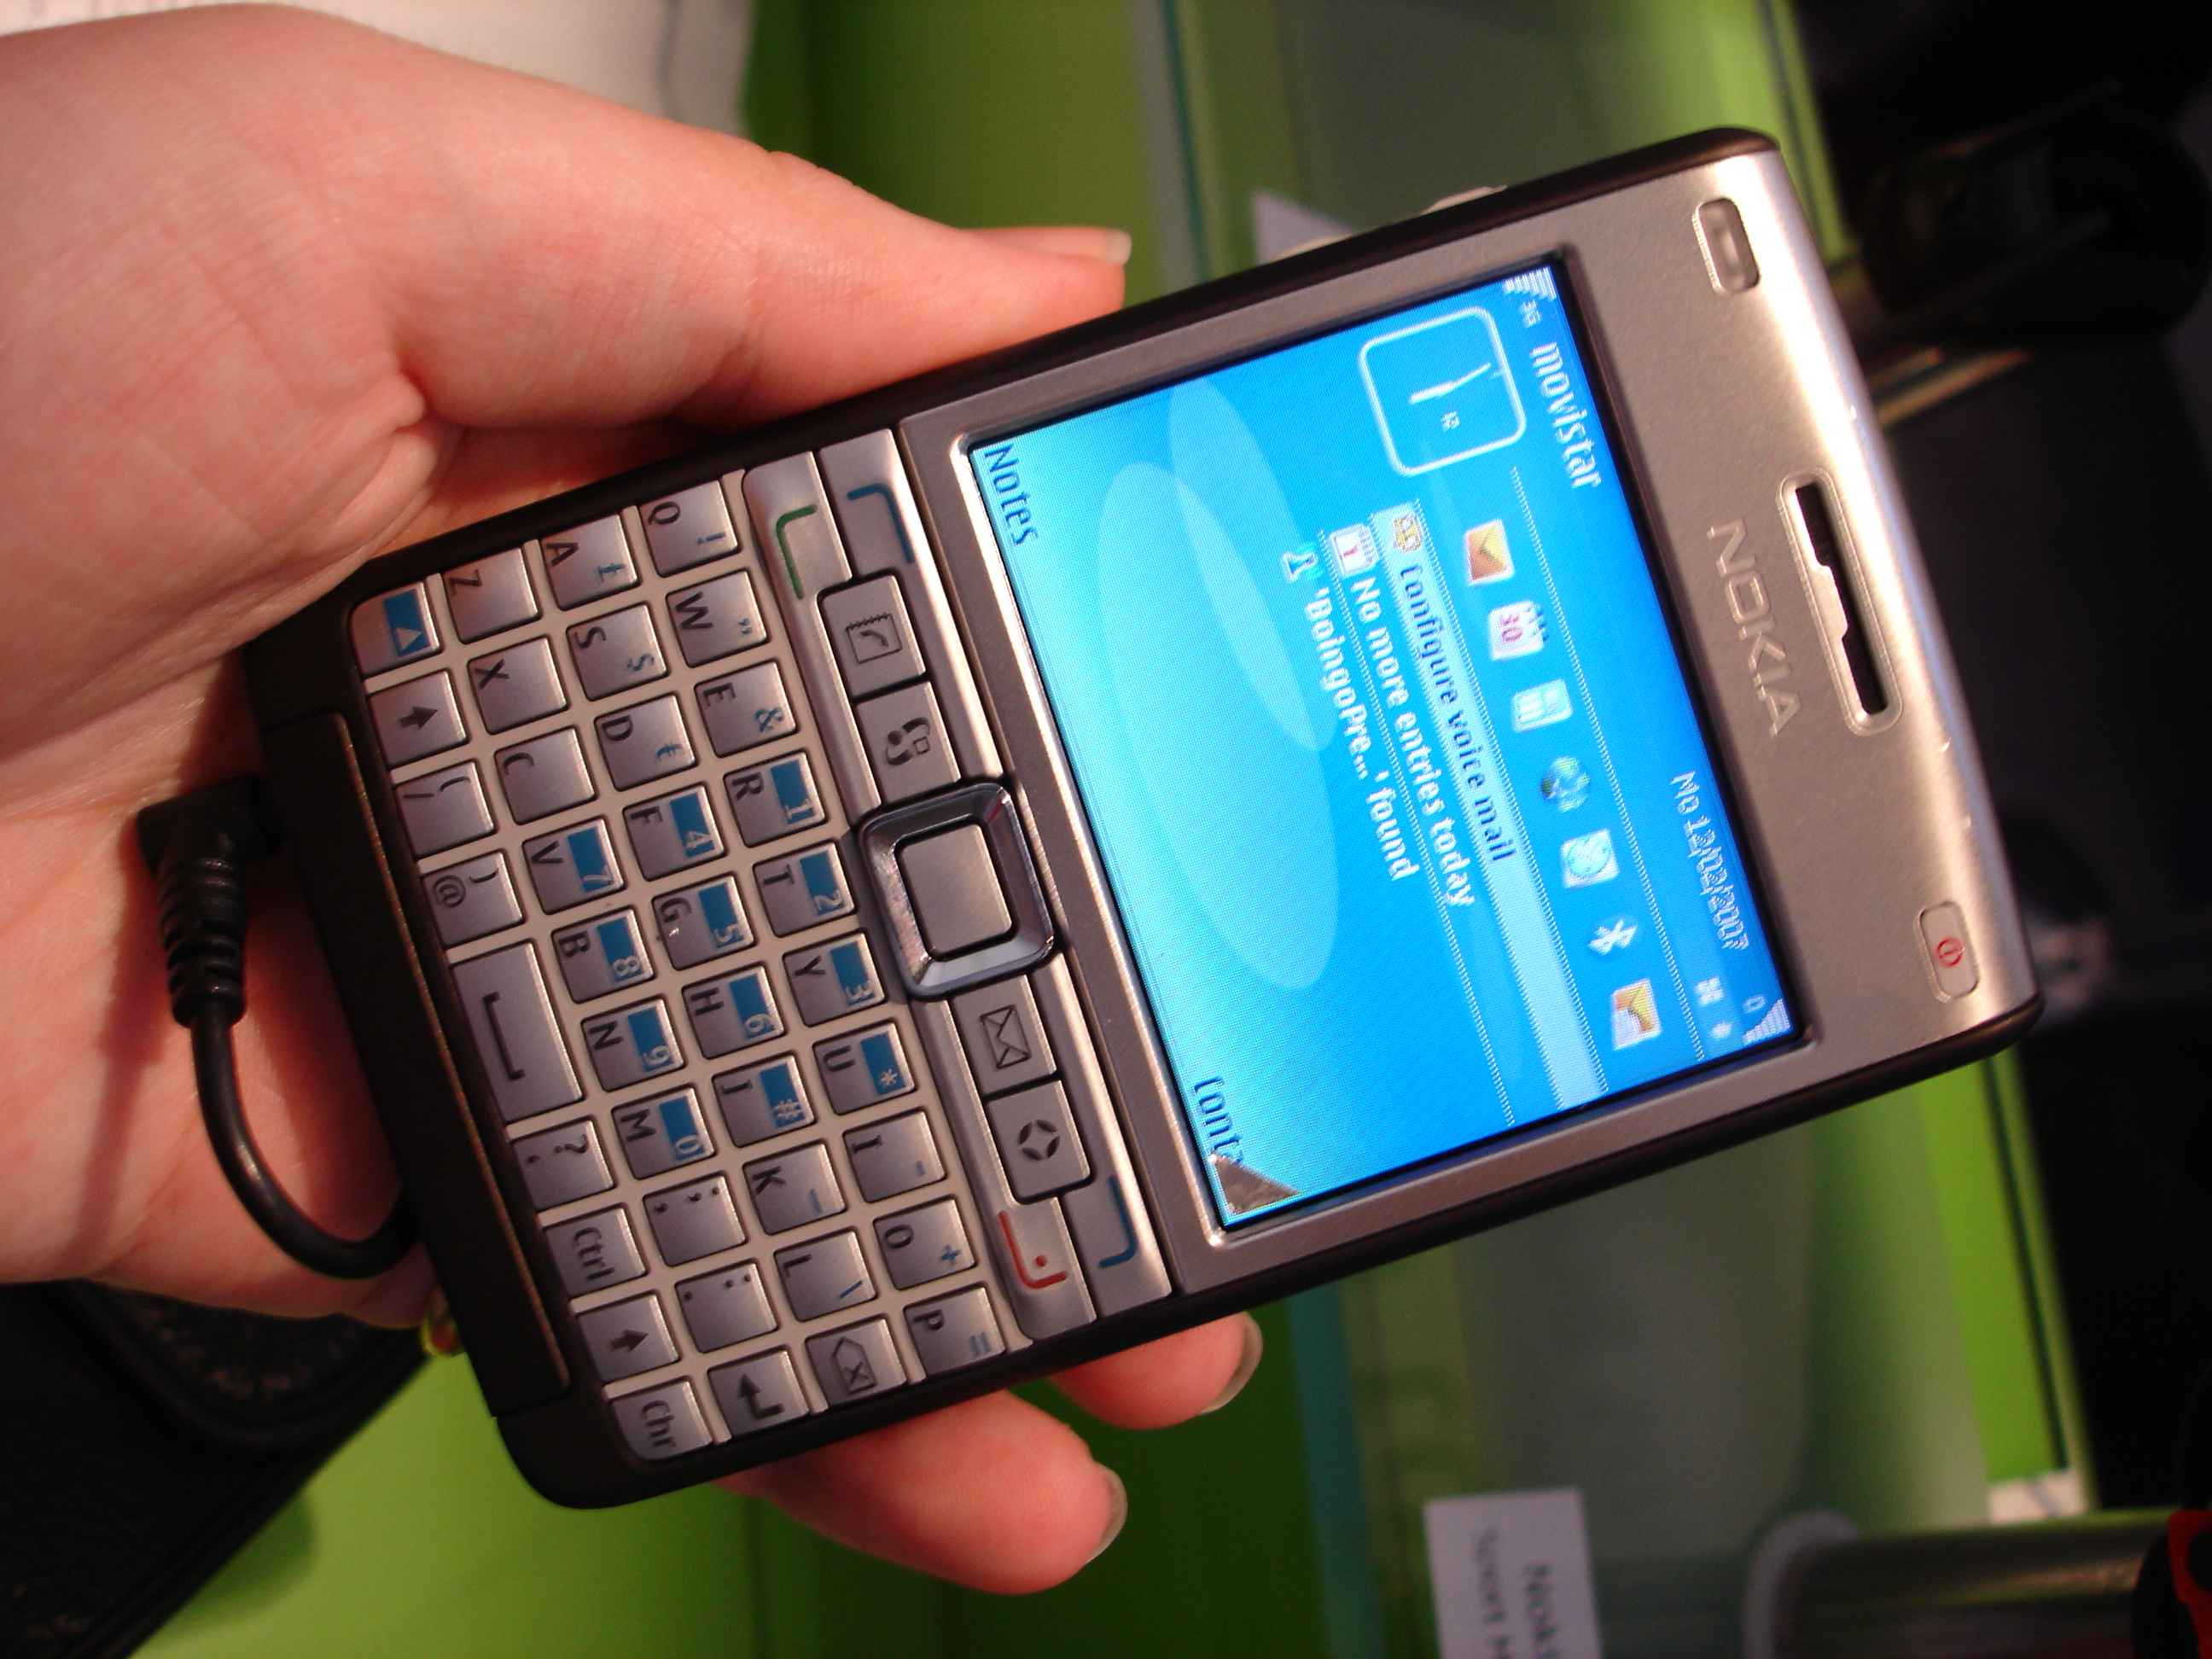 Nokia E61i Preview